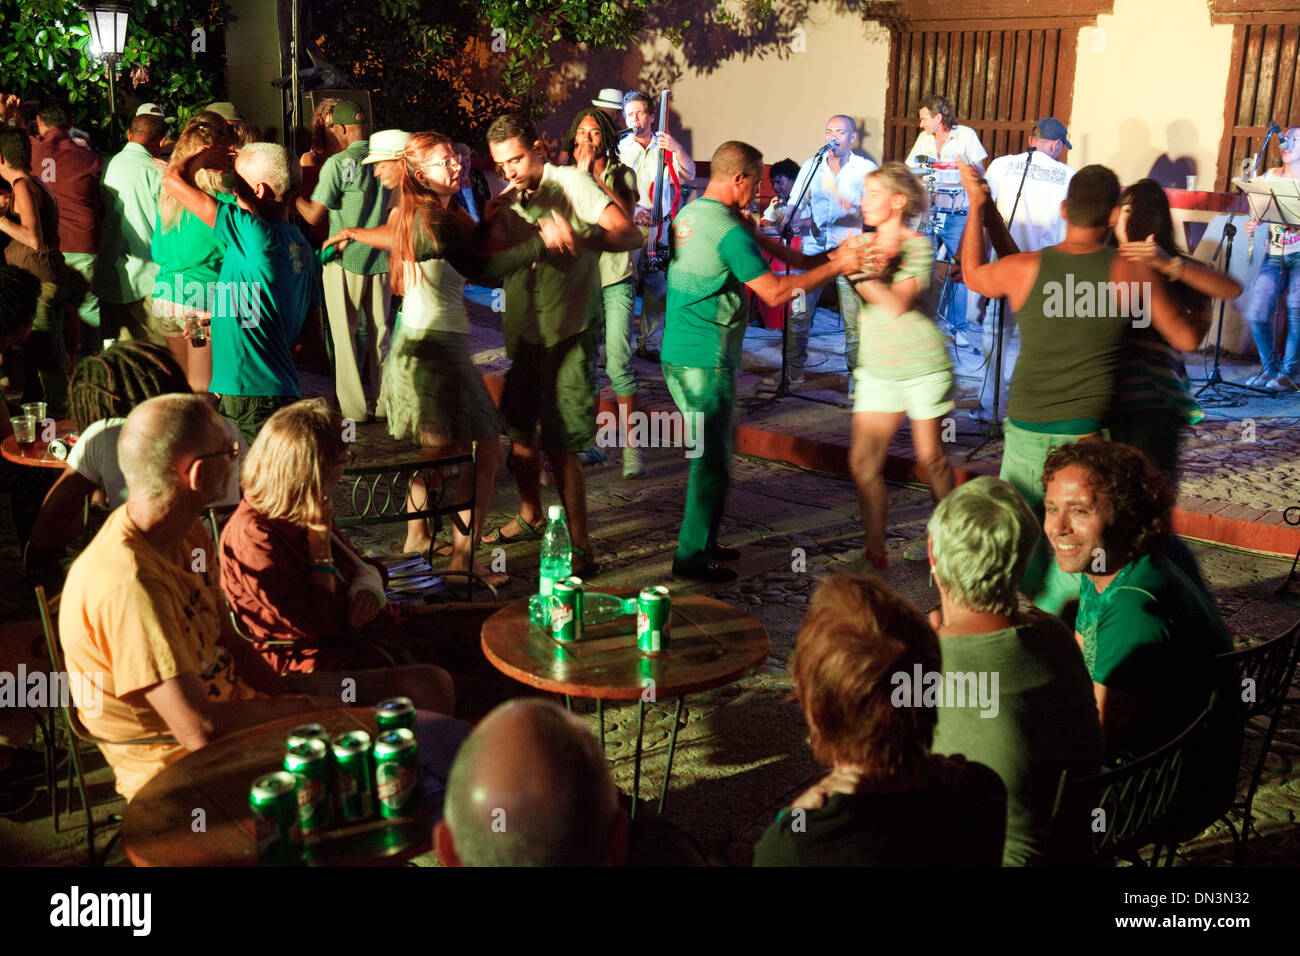 Kubaner und Touristen Salsa tanzen spät in der Nacht in eine outdoor-Bar und Nachtclub, Trinidad, Kuba Karibik Lateinamerika. Stockfoto